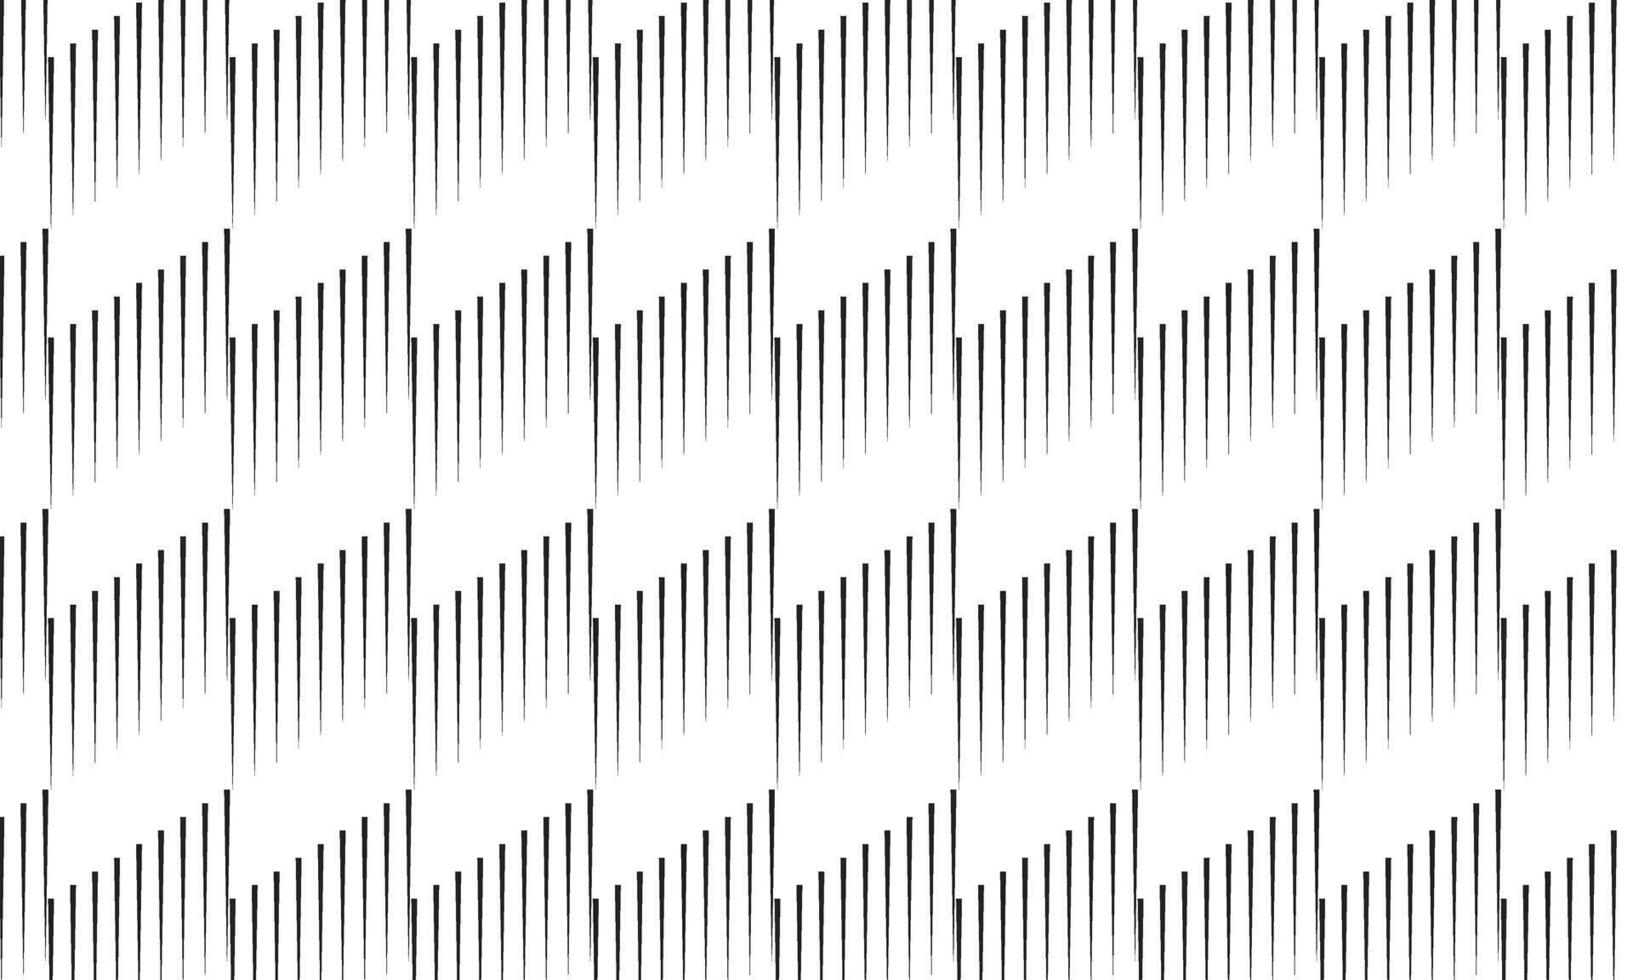 abstract meetkundig patroon vector